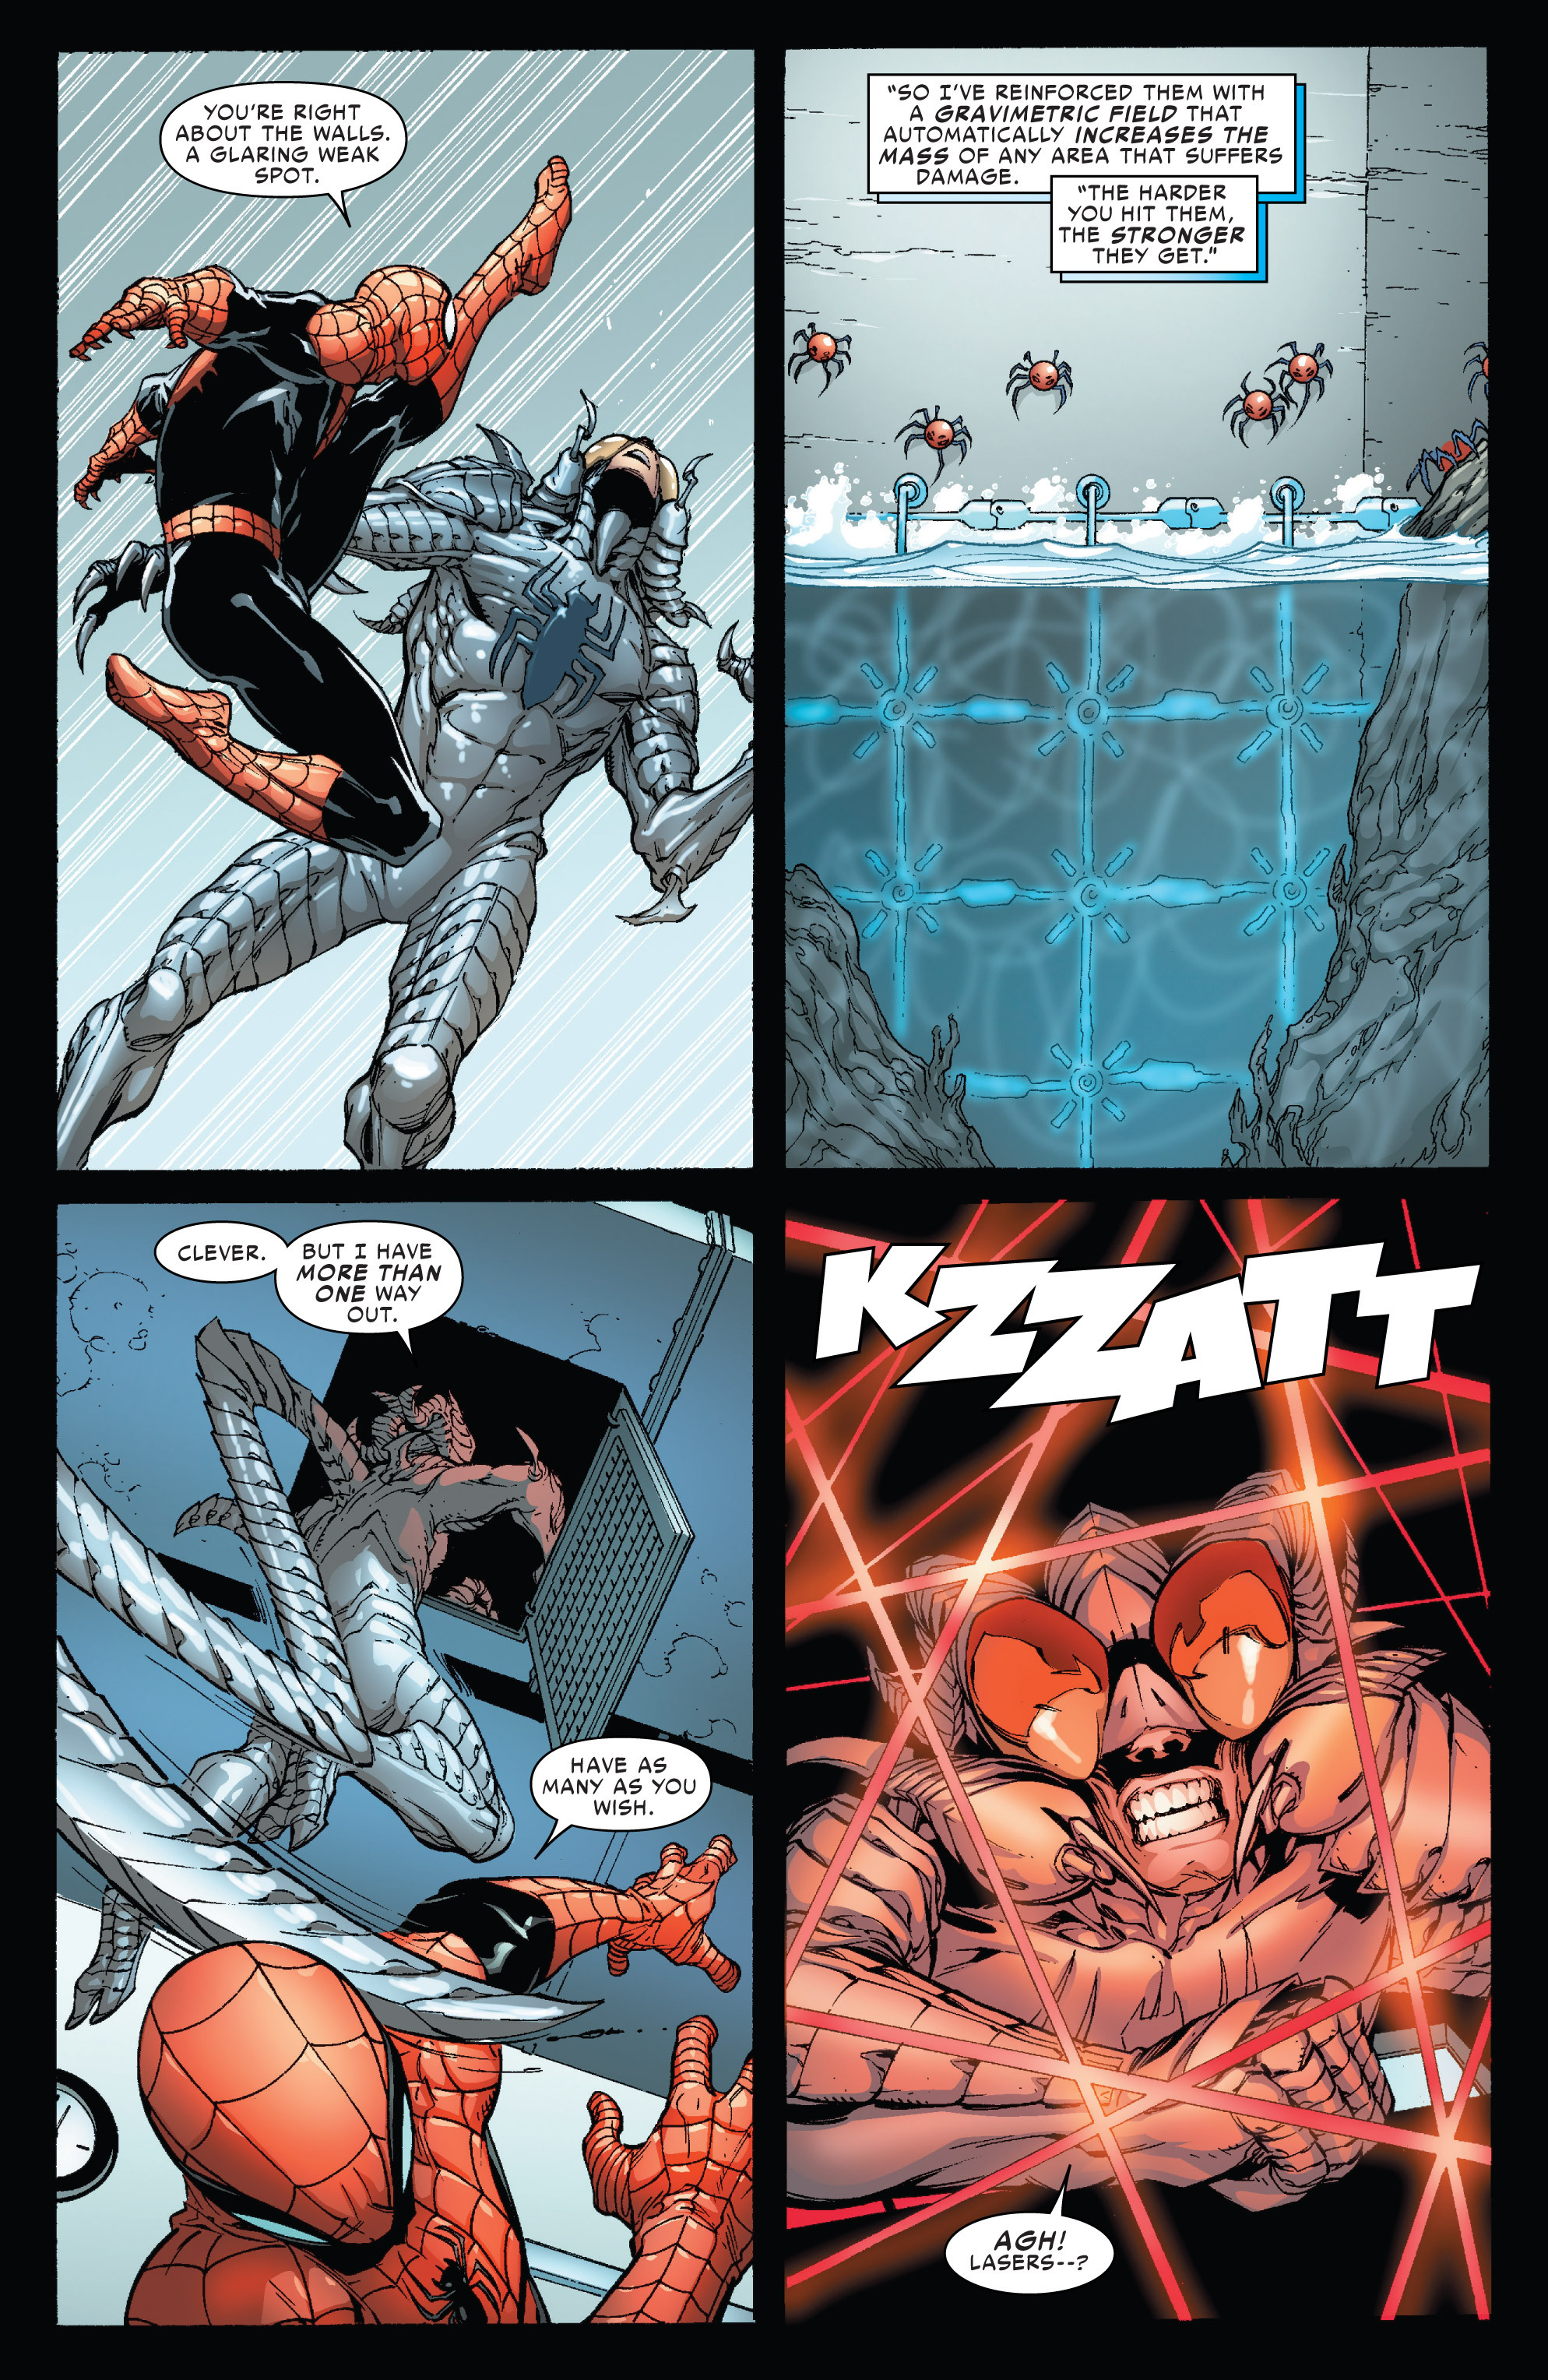 Superior Spider-Man (2013) issue 11 - Page 19